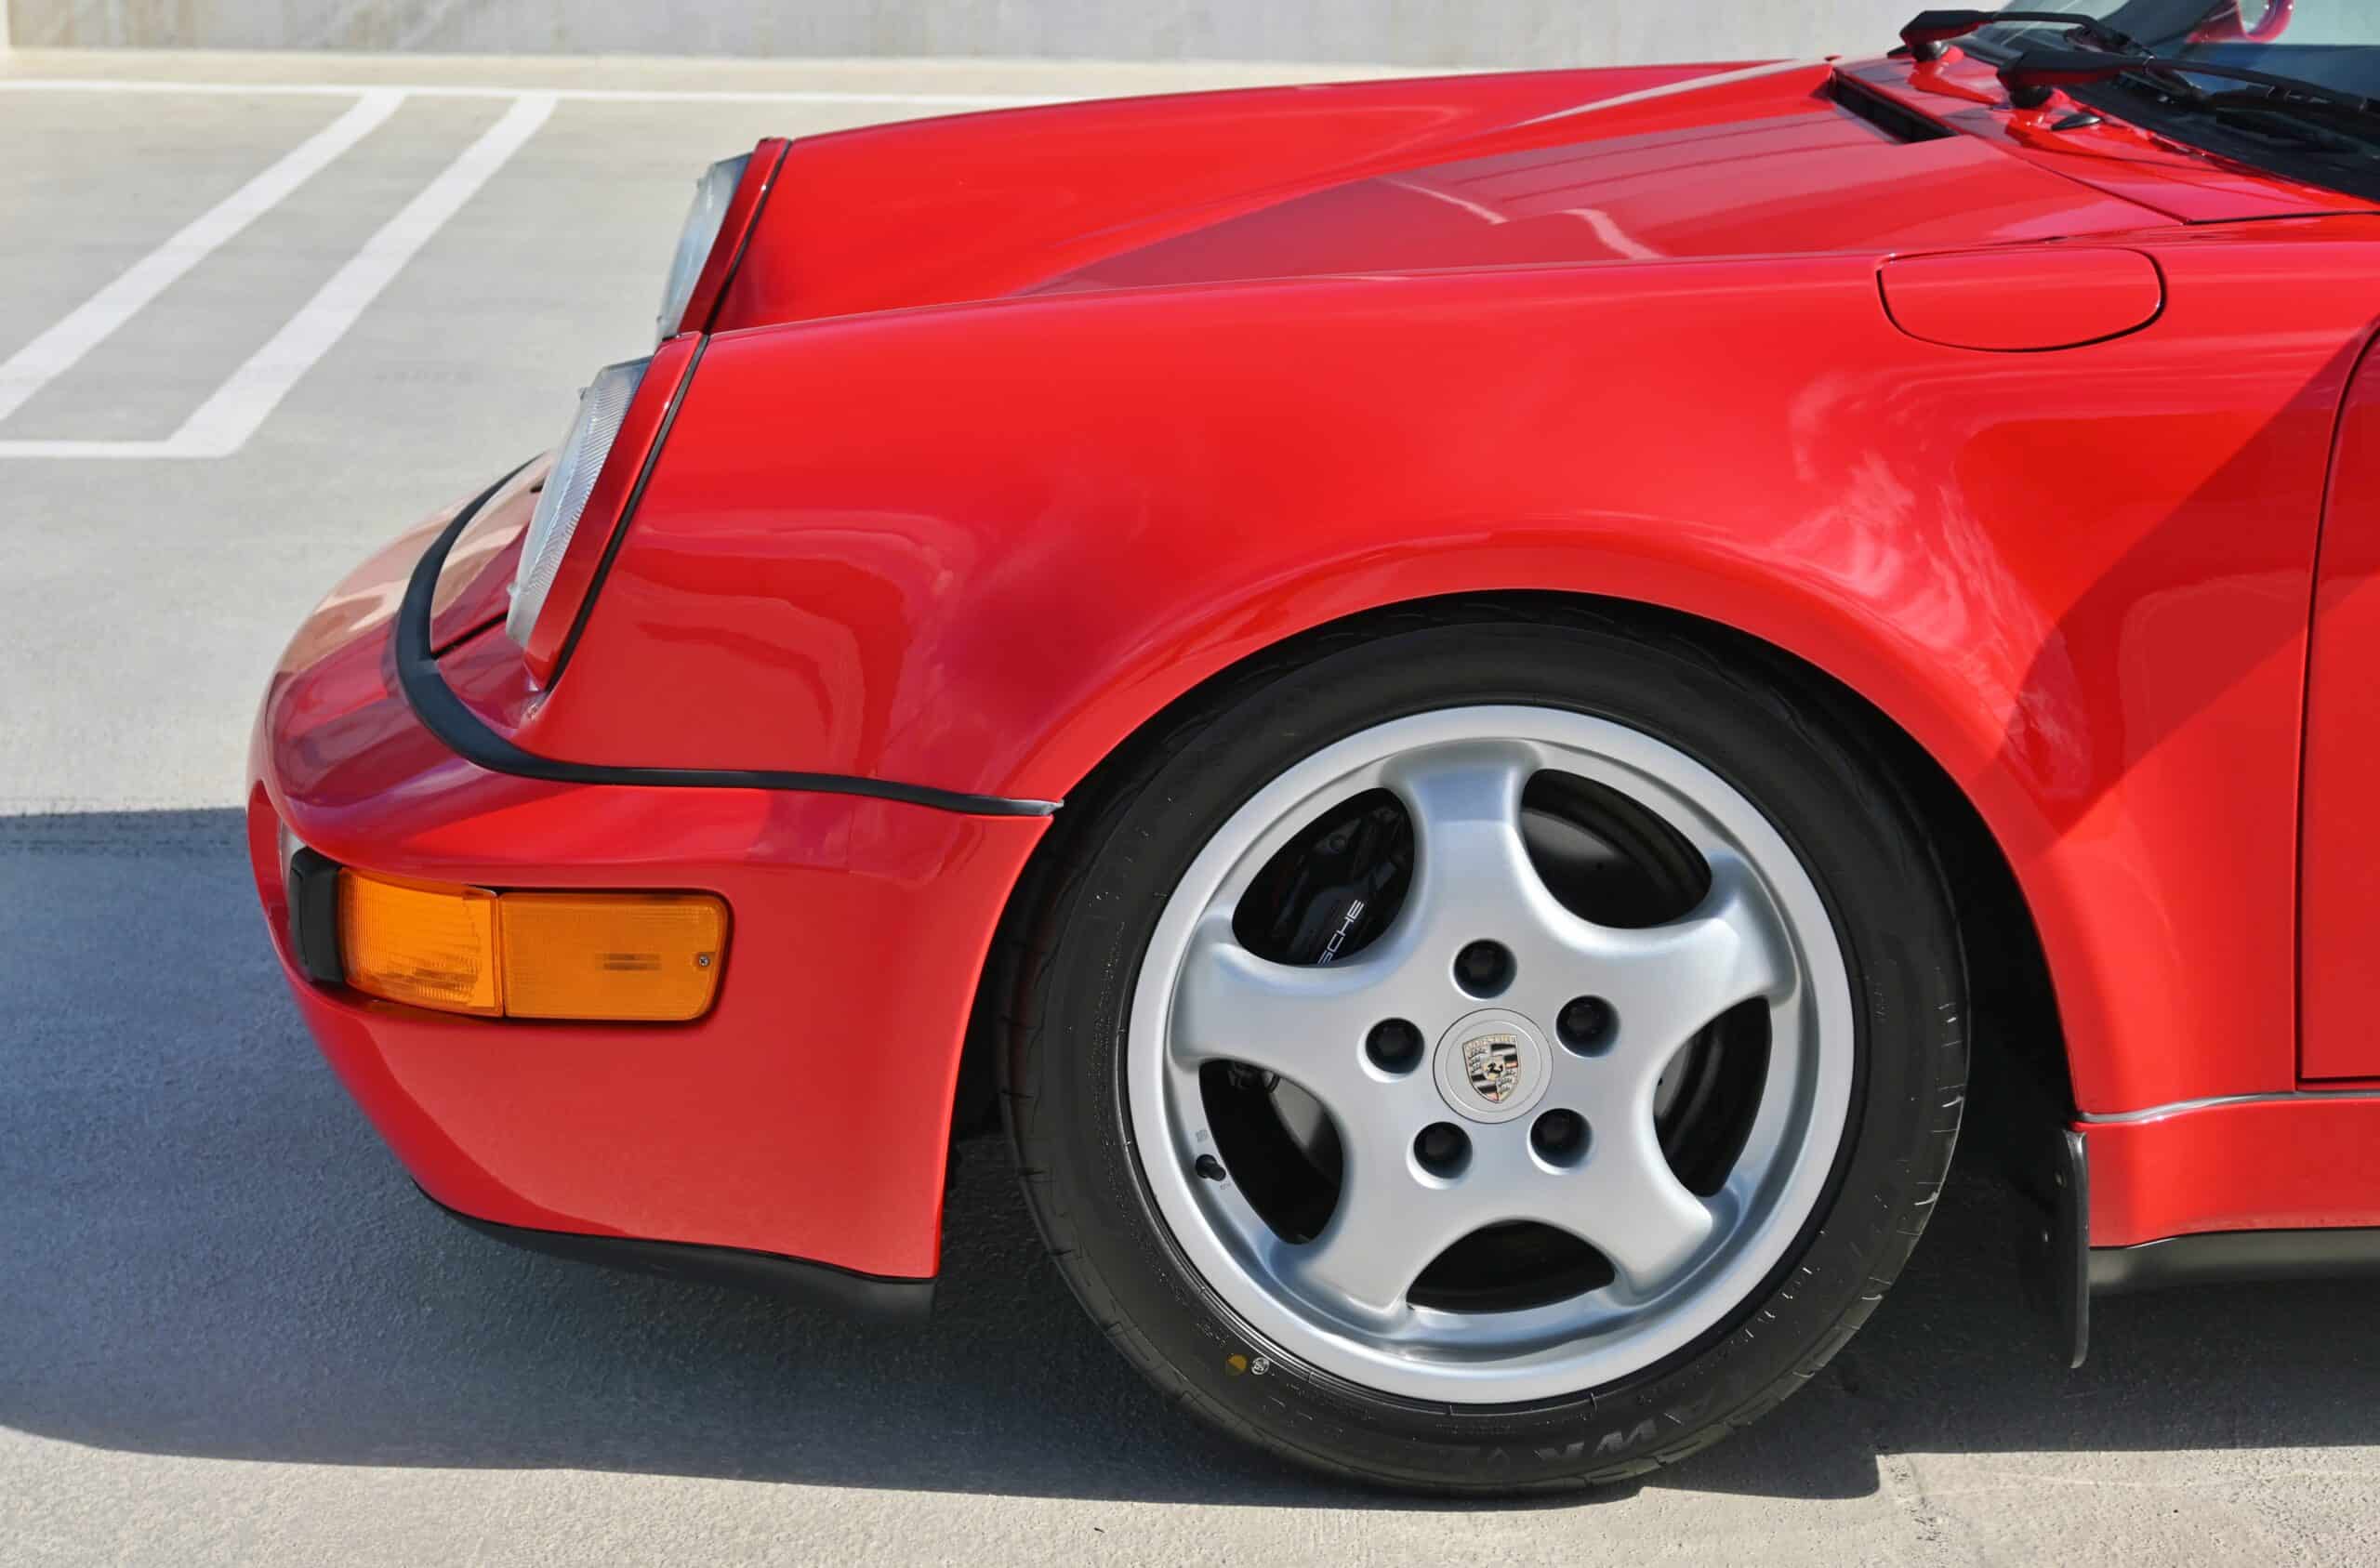 1994 Porsche 911 964 C4 Widebody 1 of 267 Built – Factory Turbo Look – Cup Wheels – Euro Height – Engine Rebuilt